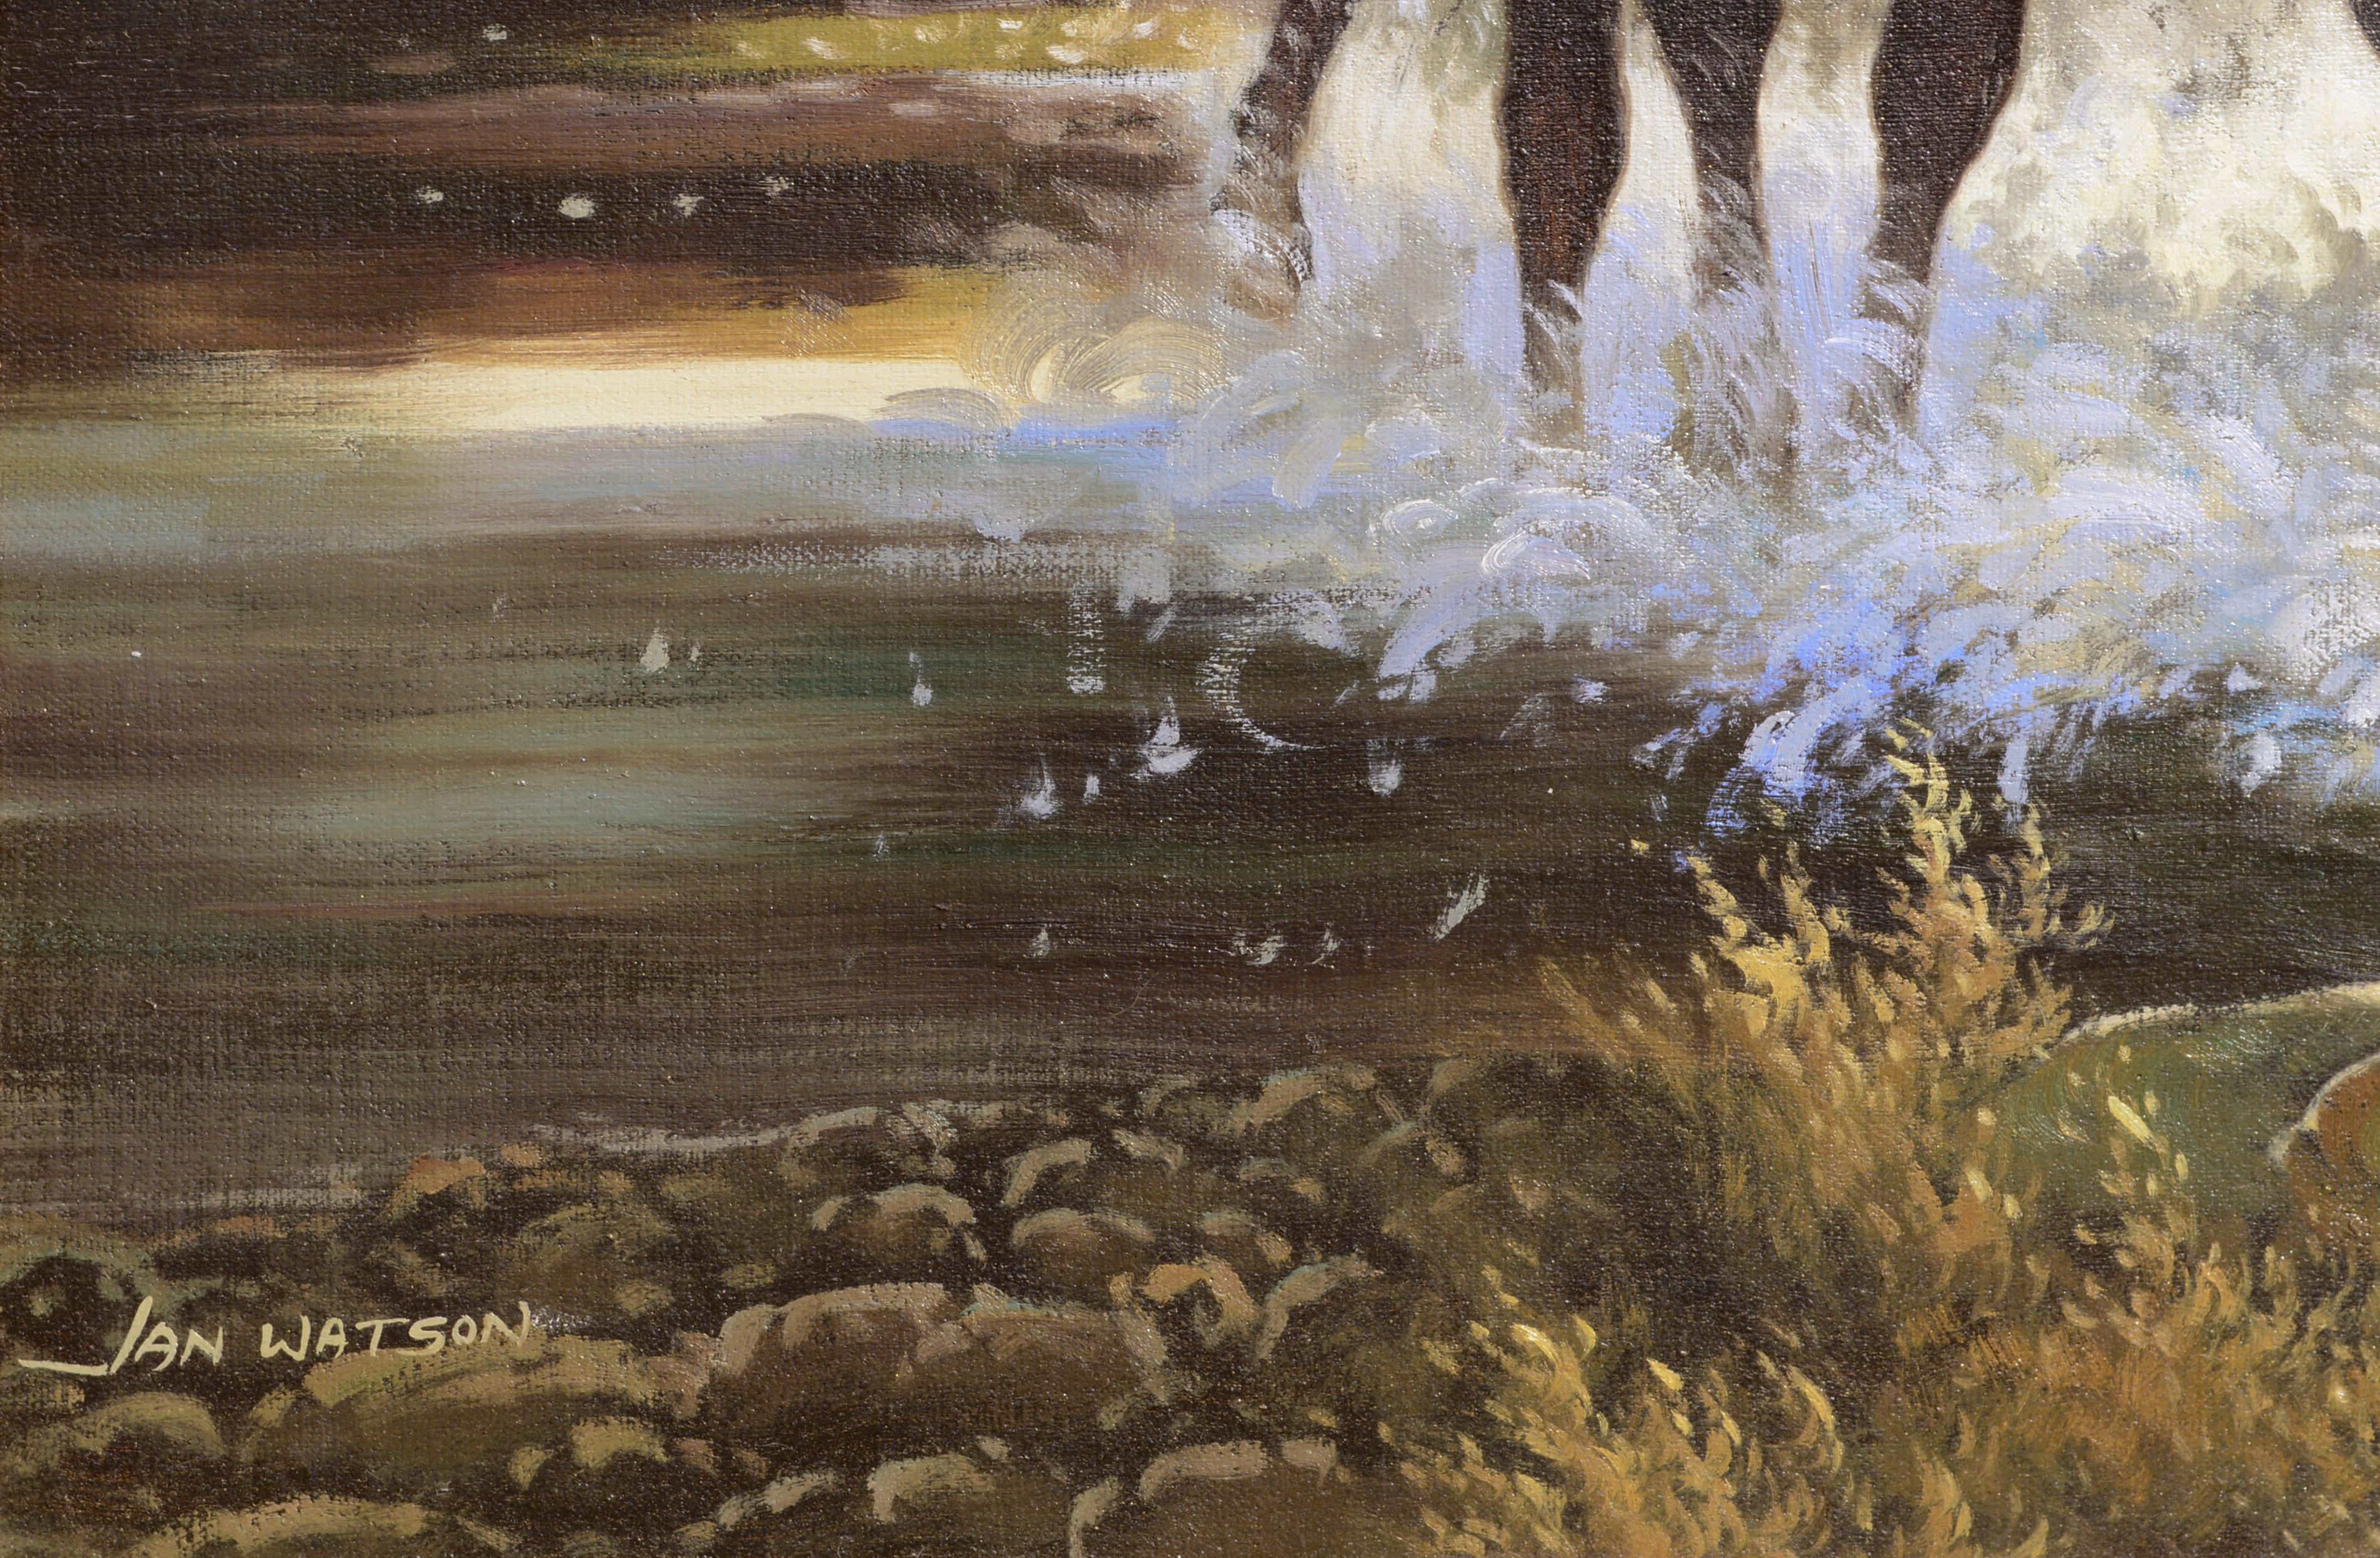 Dynamische figurative Western-Landschaftsszene mit einem Cowboy und Rindern, die mit realistischen Details dargestellt sind, während sie durch einen Fluss schwimmen, von dem unbekannten Künstler Jan Watson (Amerikaner, 20. Jahrhundert). Der Cowboy